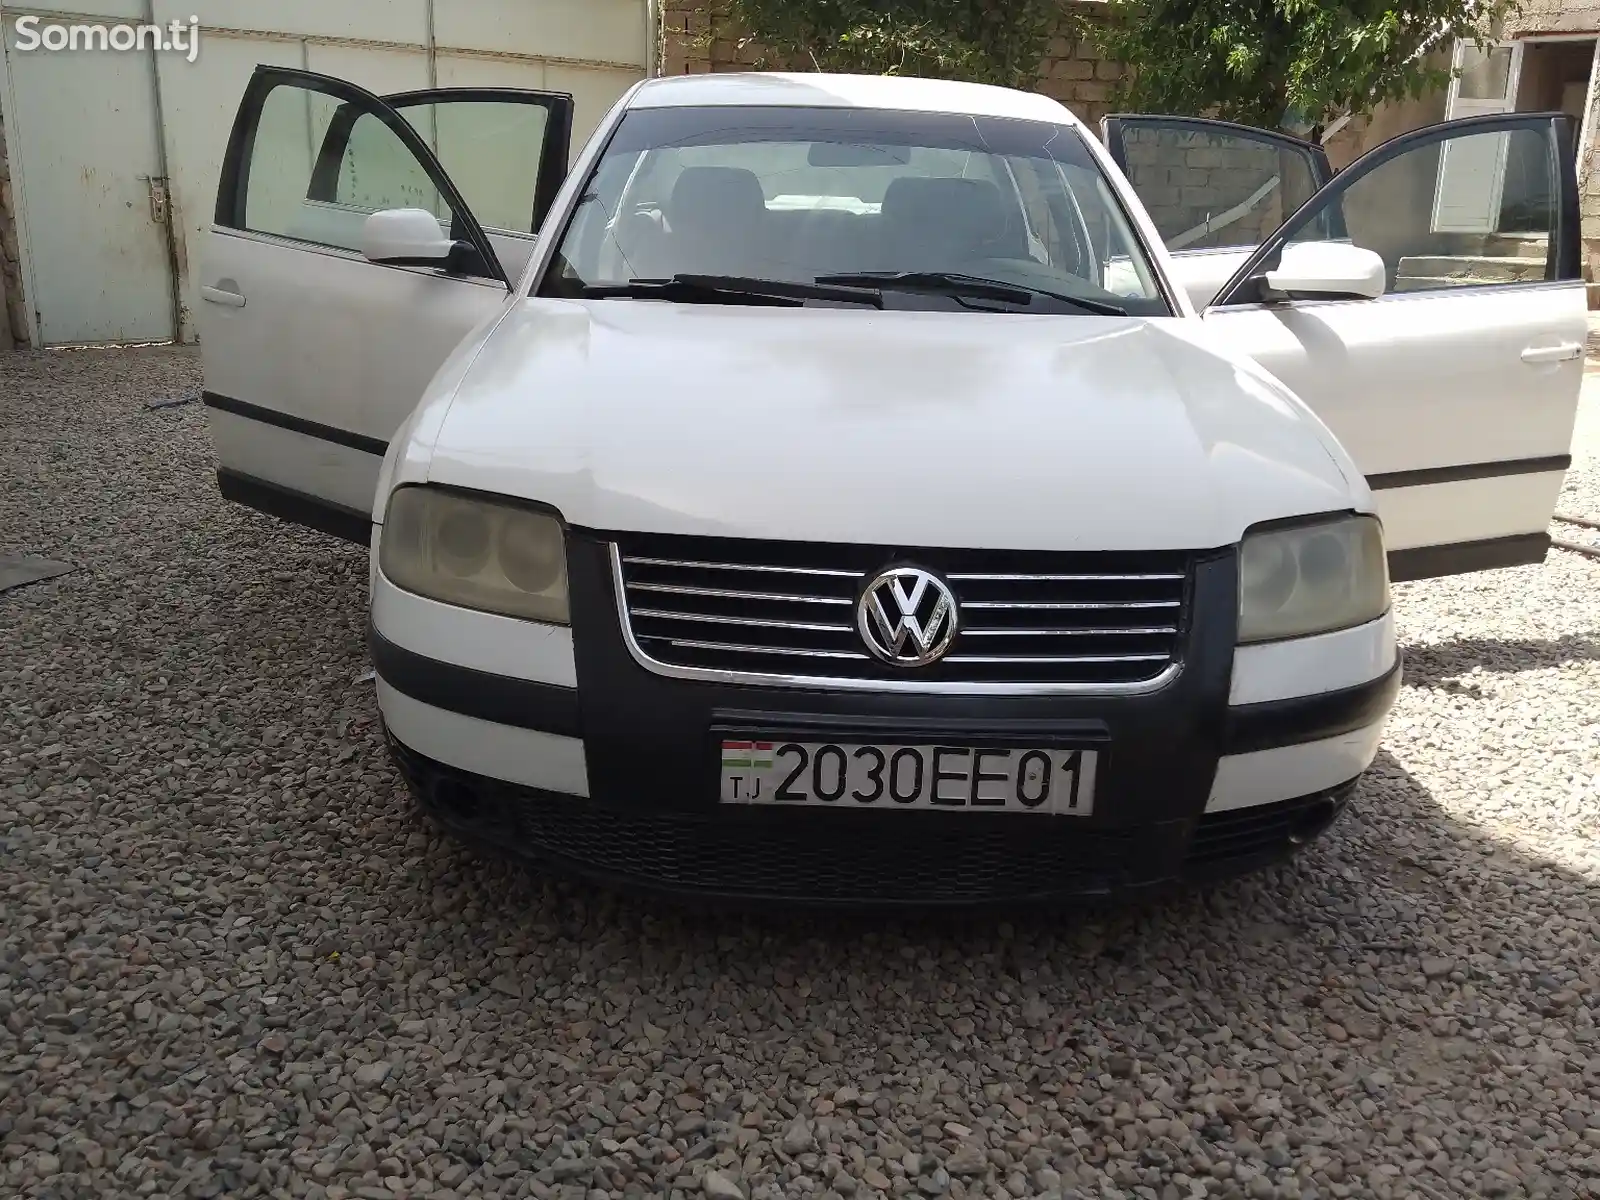 Volkswagen Passat, 2001-2